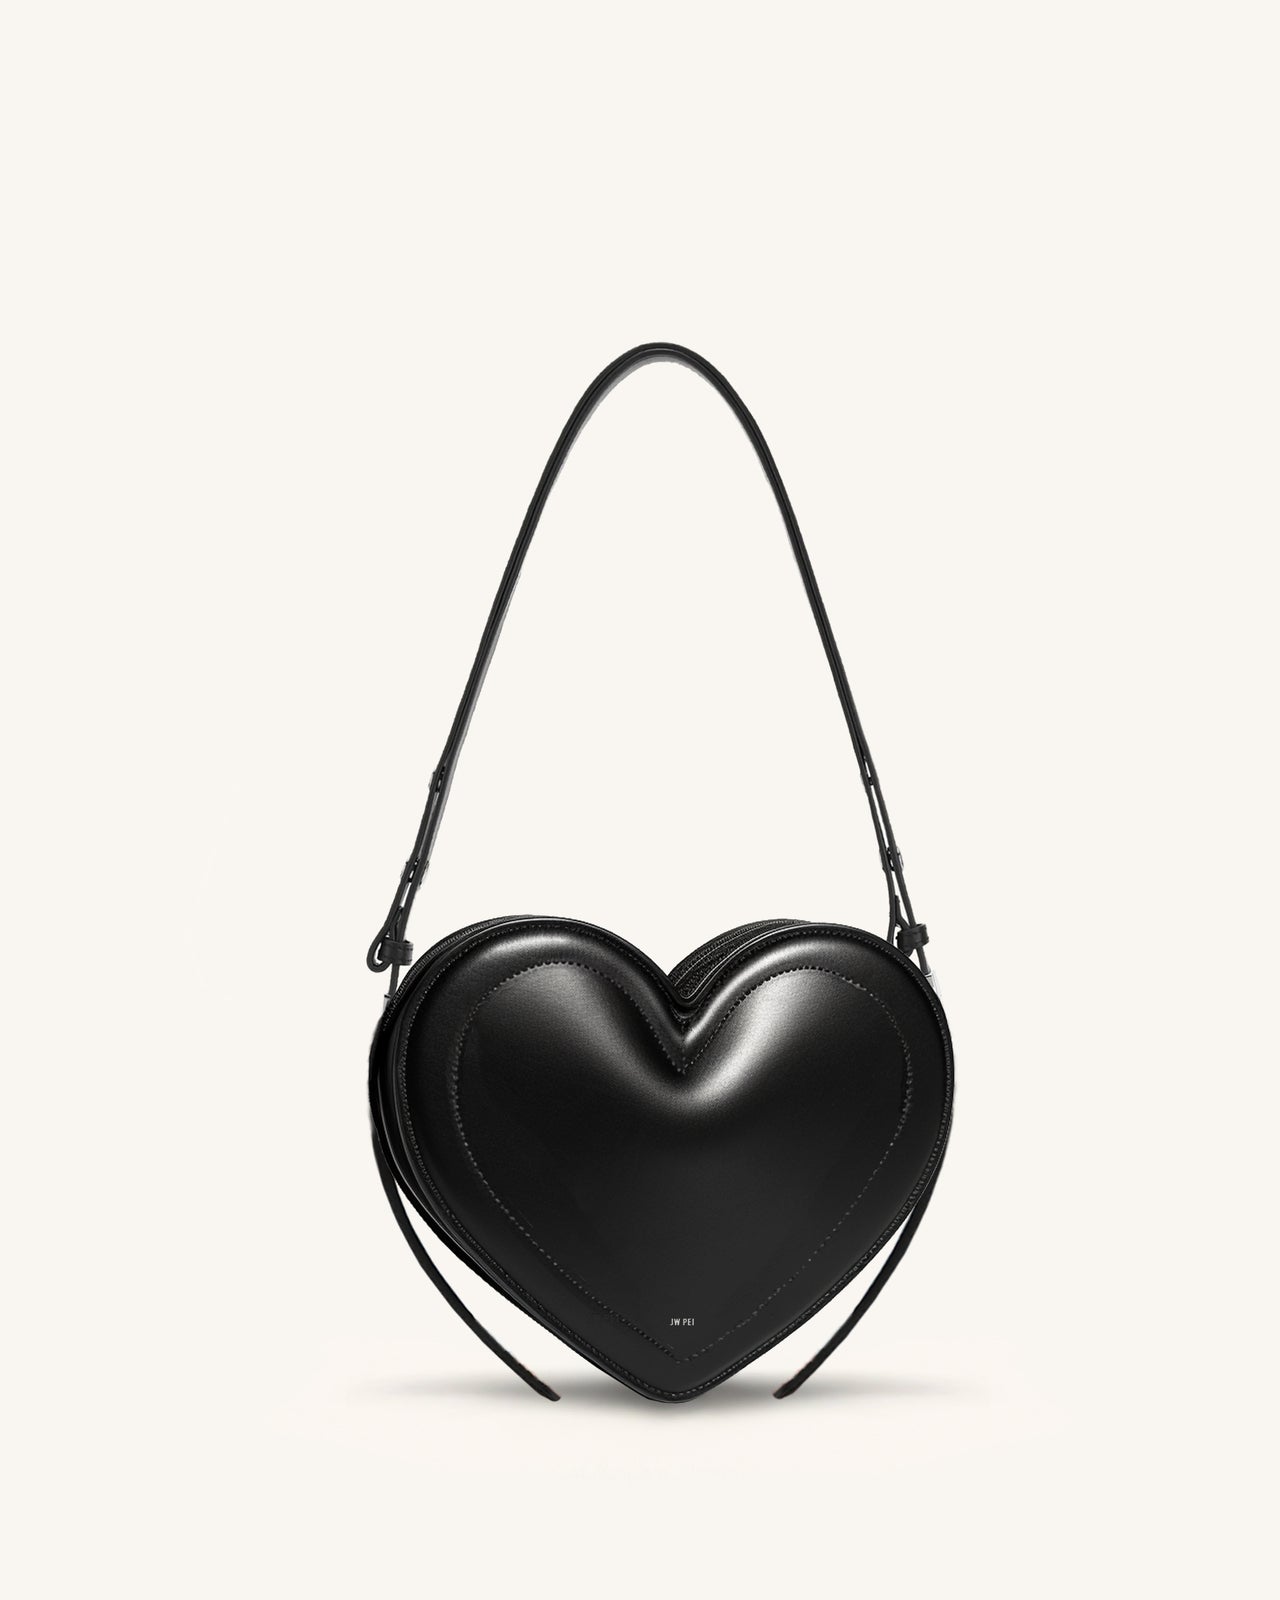 Arlene Heart shaped bag - Black